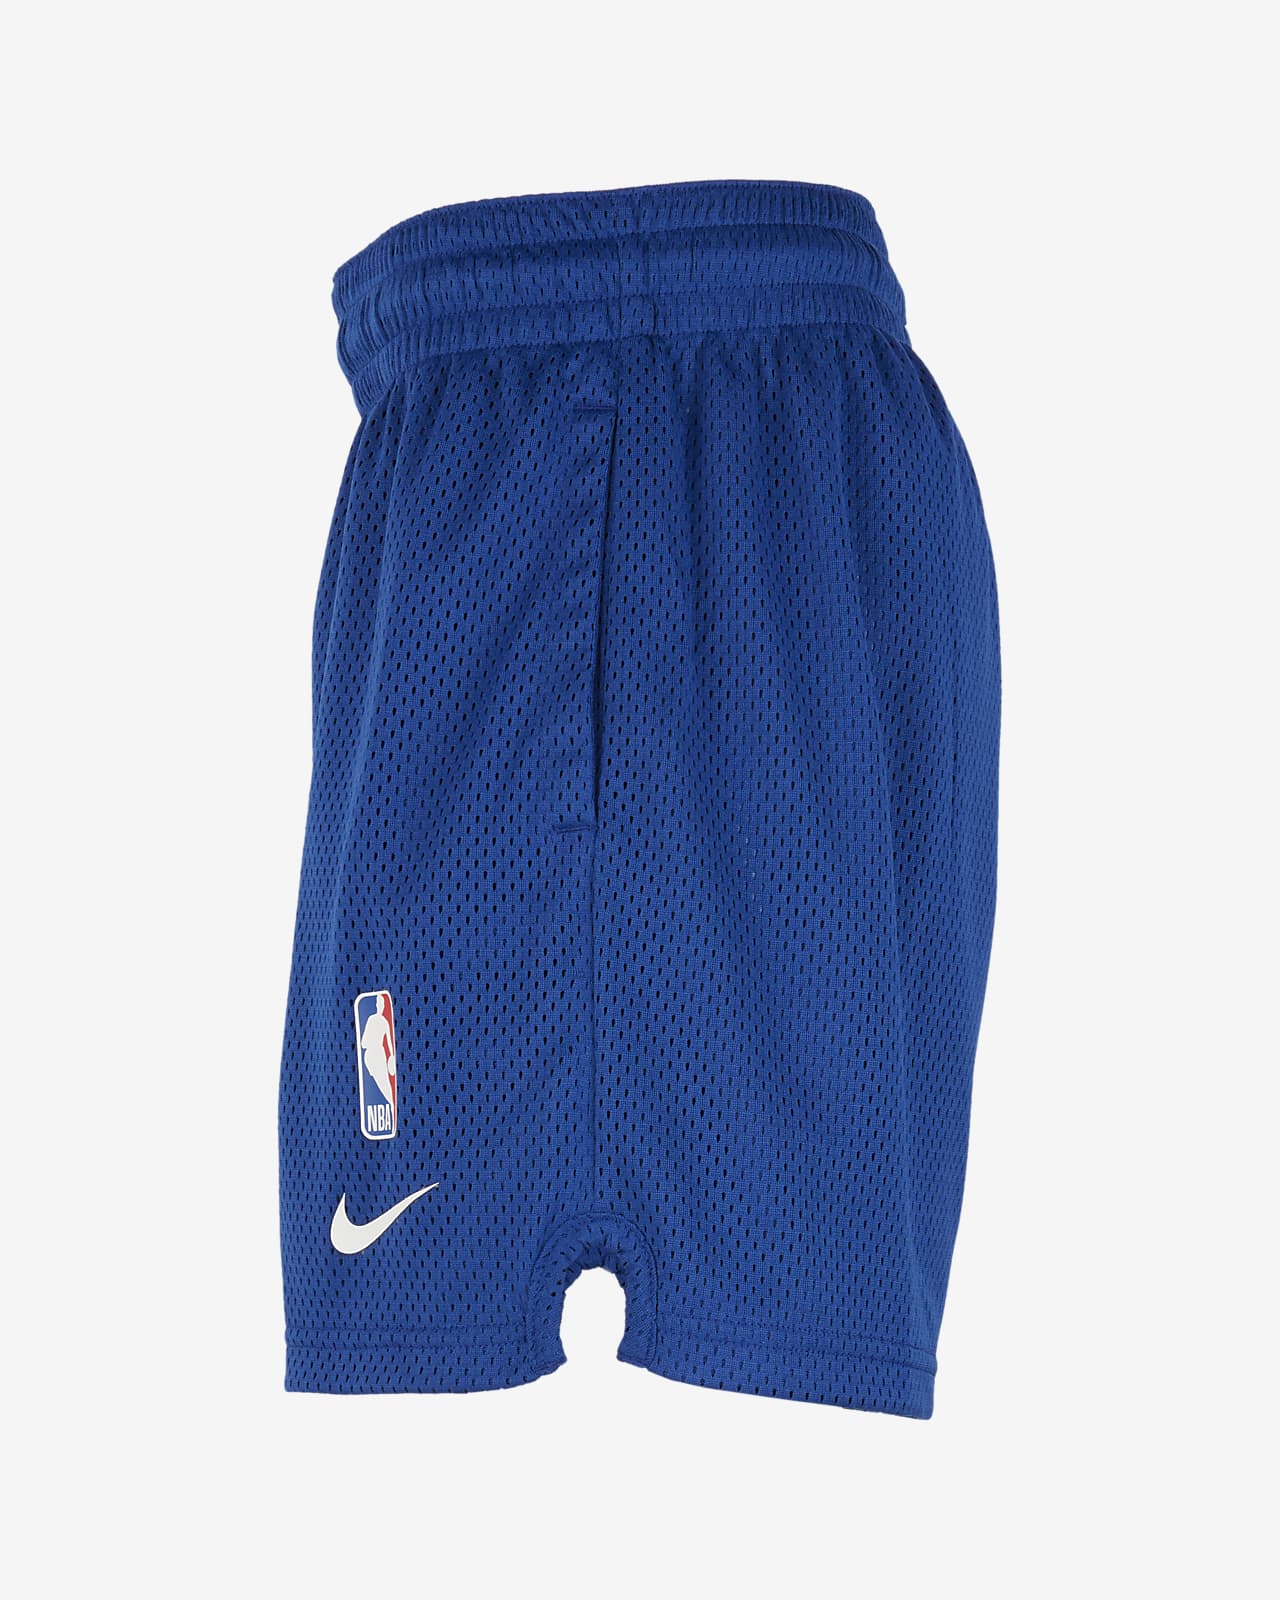 Zipway NBA Basketball Youth New York Knicks Malone Shorts - Black / Blue - Large (14-16)